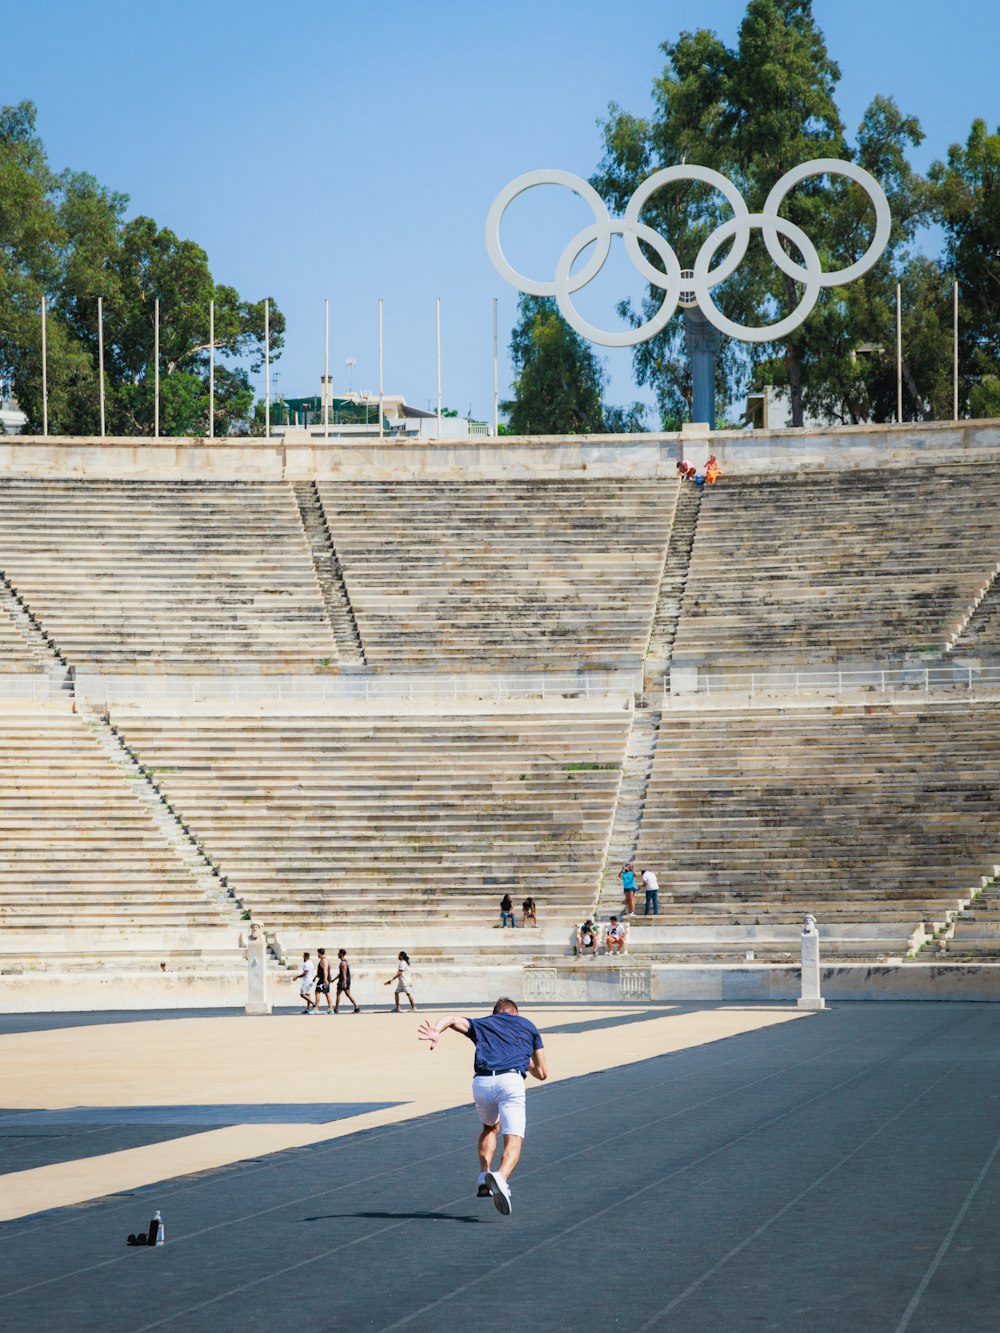 Un hombre anda en patineta frente a un estadio